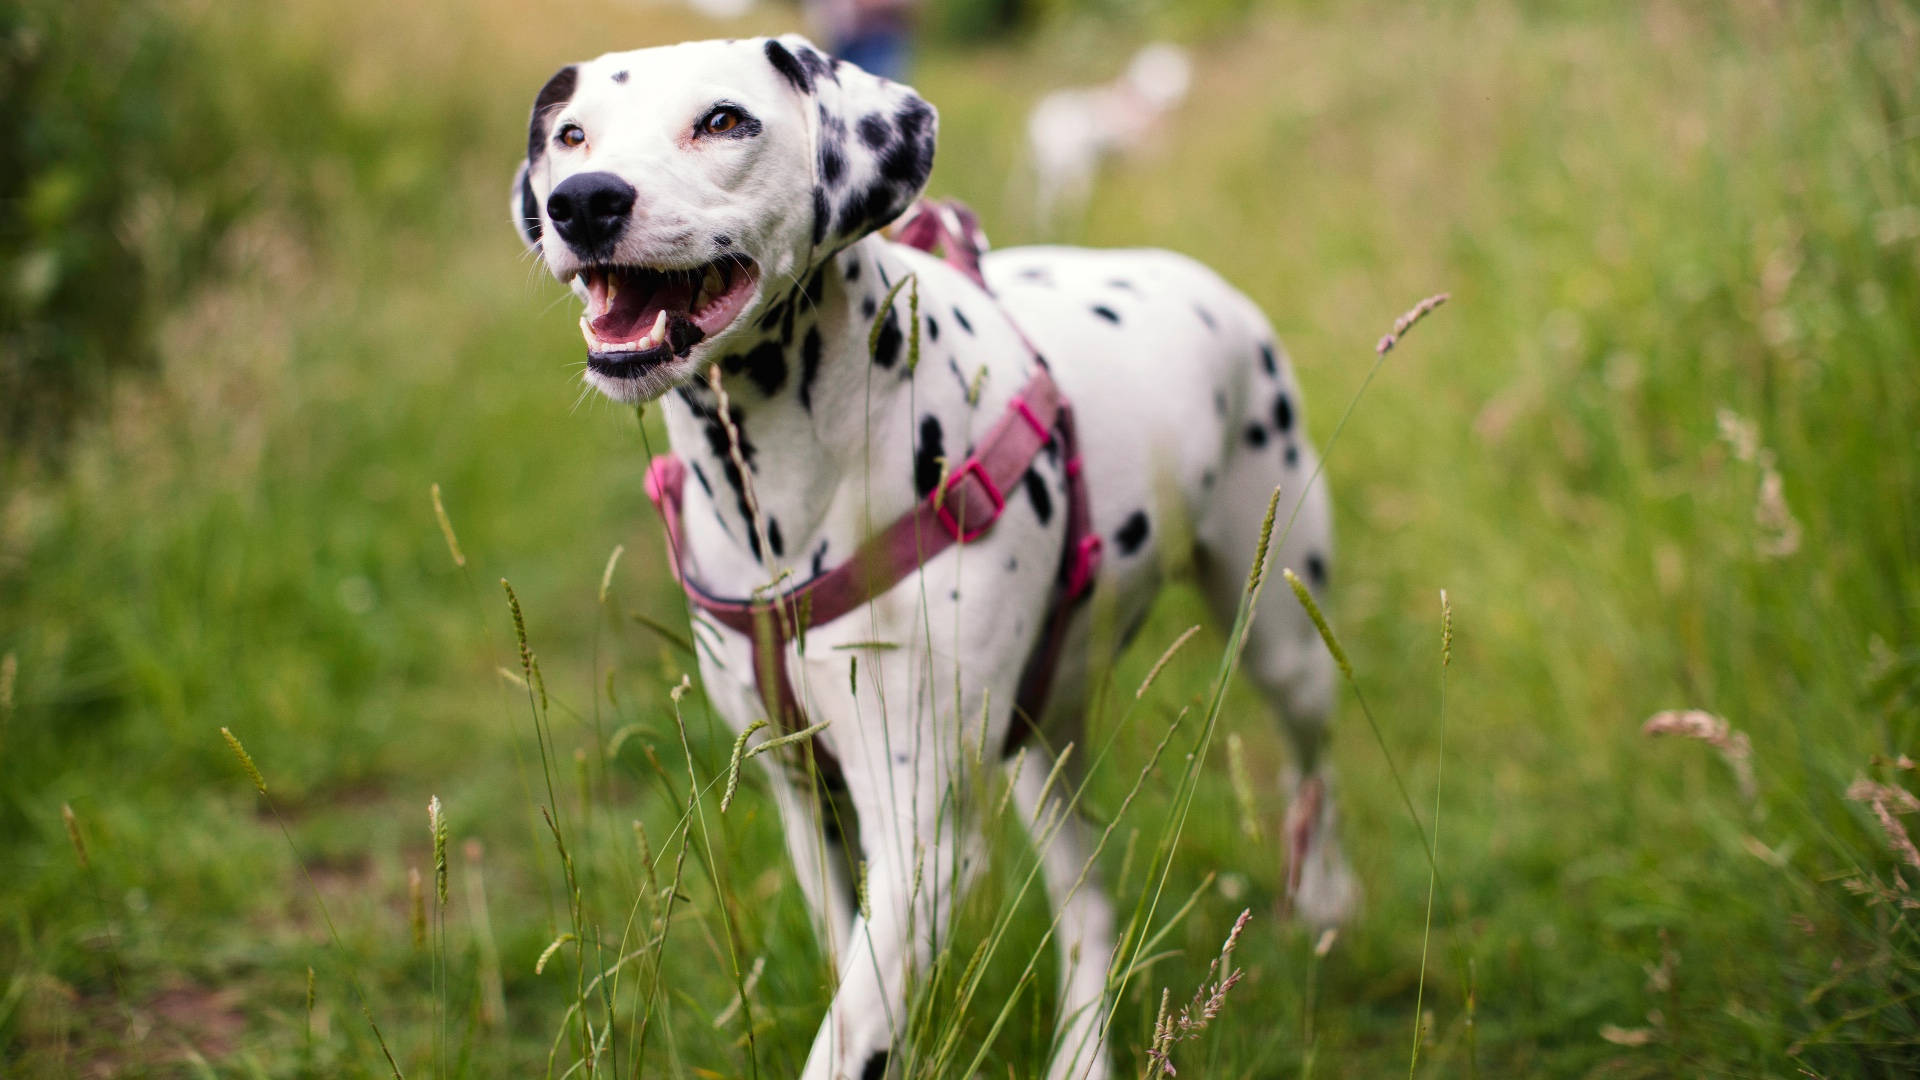 Dalmatian Dog With Pink Collar